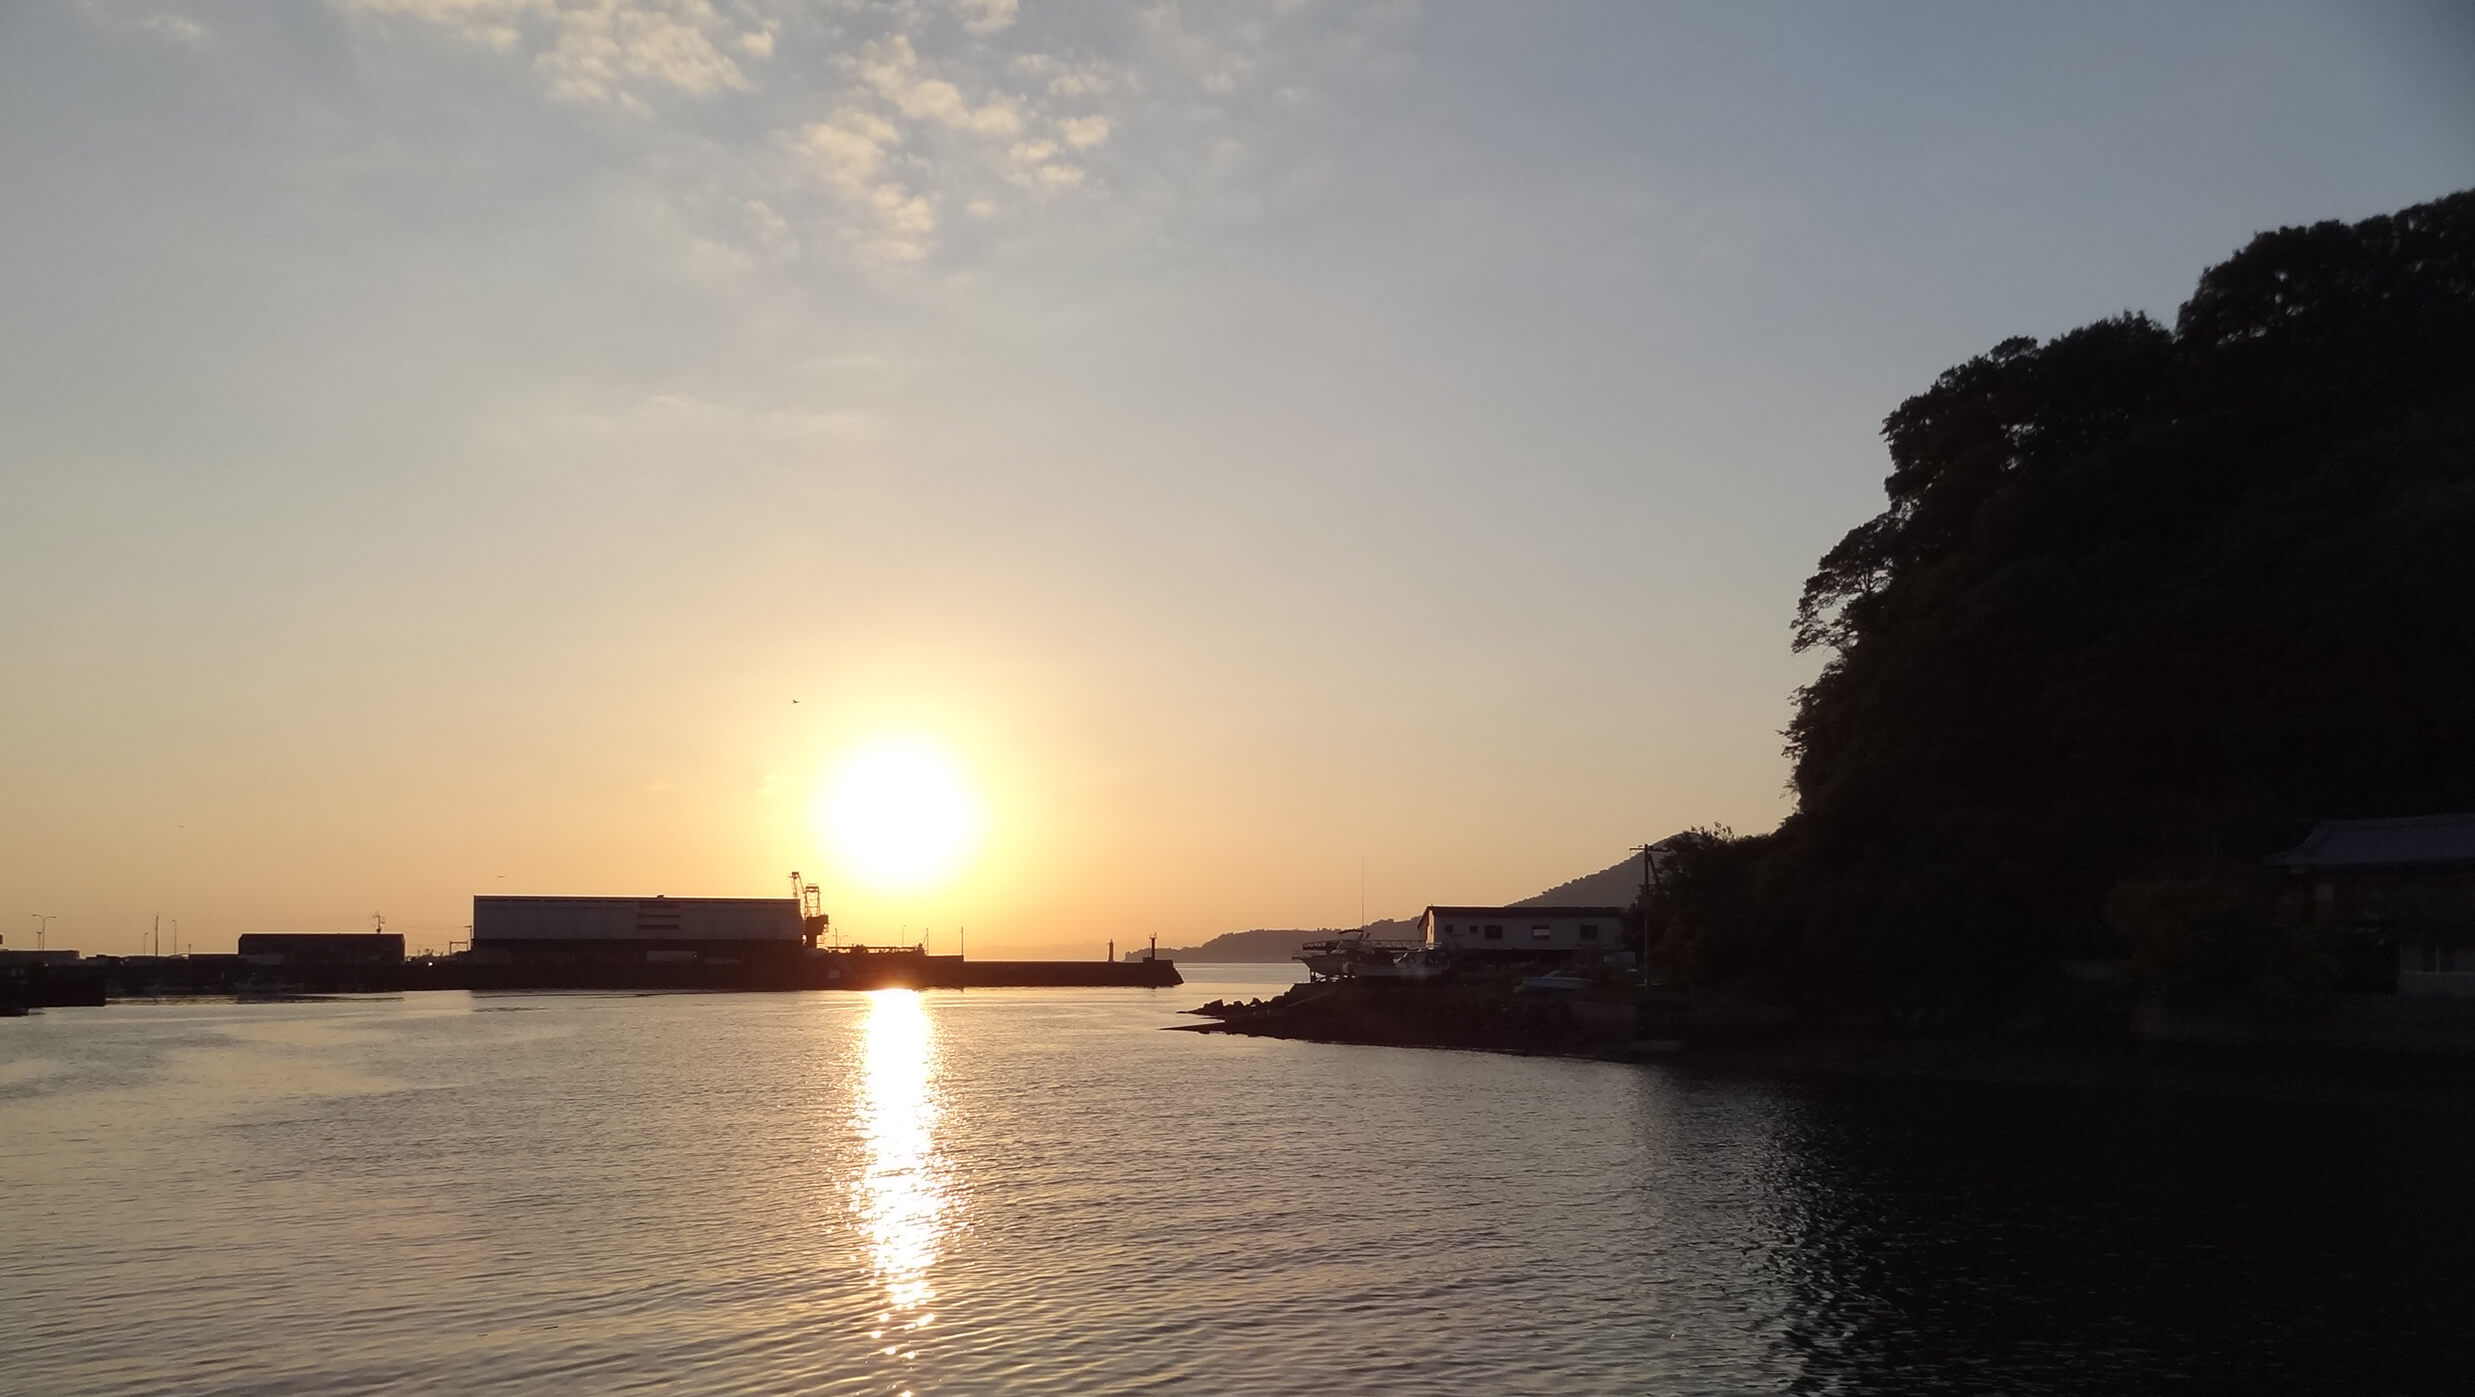 三津の渡しの付近から望む夕日。万葉の昔から、あまたの人々が見続けてきた歴史ある三津浜の風景。